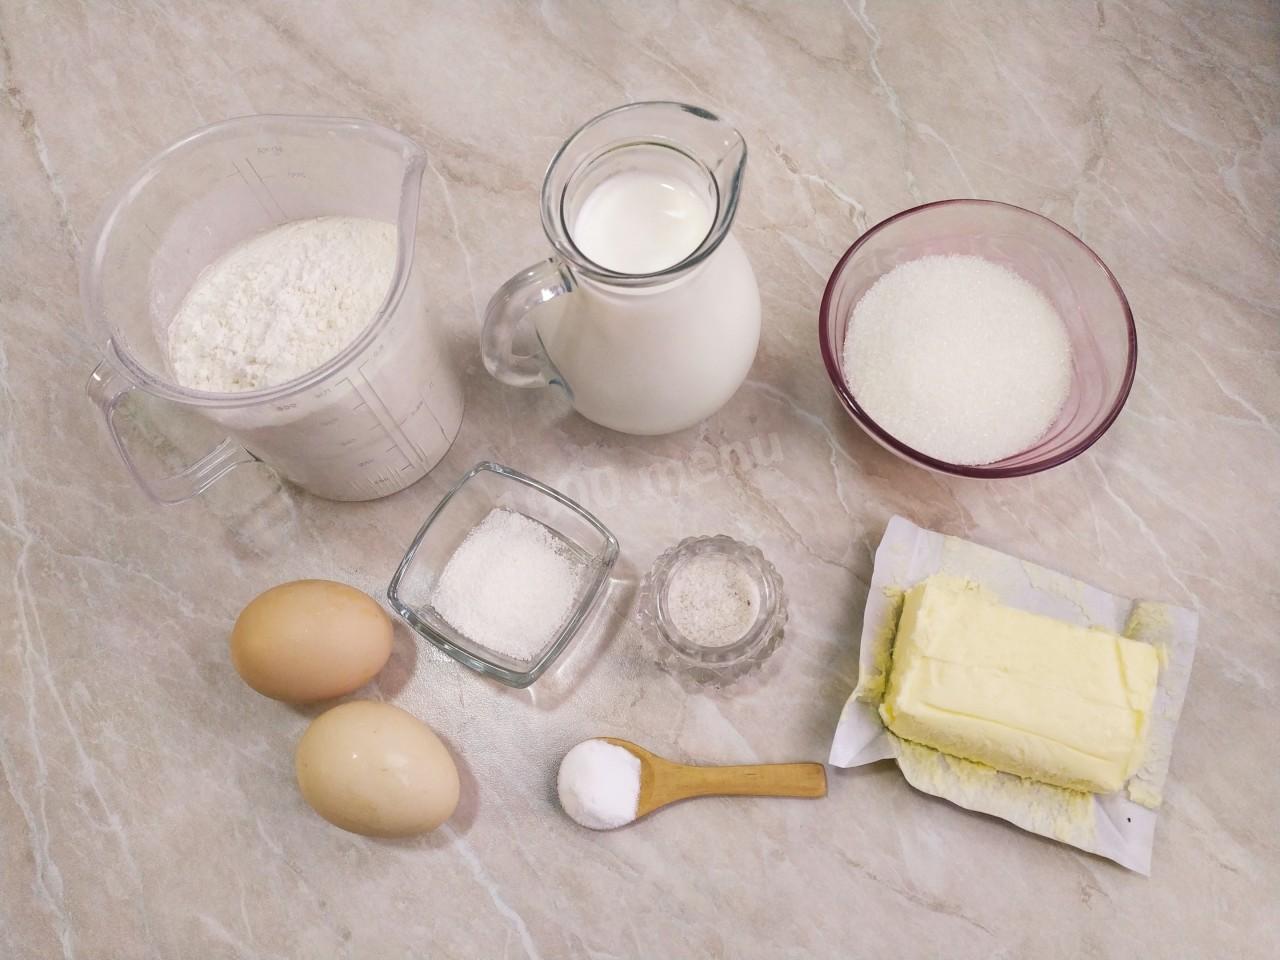 Кефир и мука что приготовить. Что можно сделать из муки соды молока яиц и ванильного сахара. Ананас соль сода сахар. Как использовать соду вместо разрыхлителя. Что можно использовать вместо ванильного сахара.